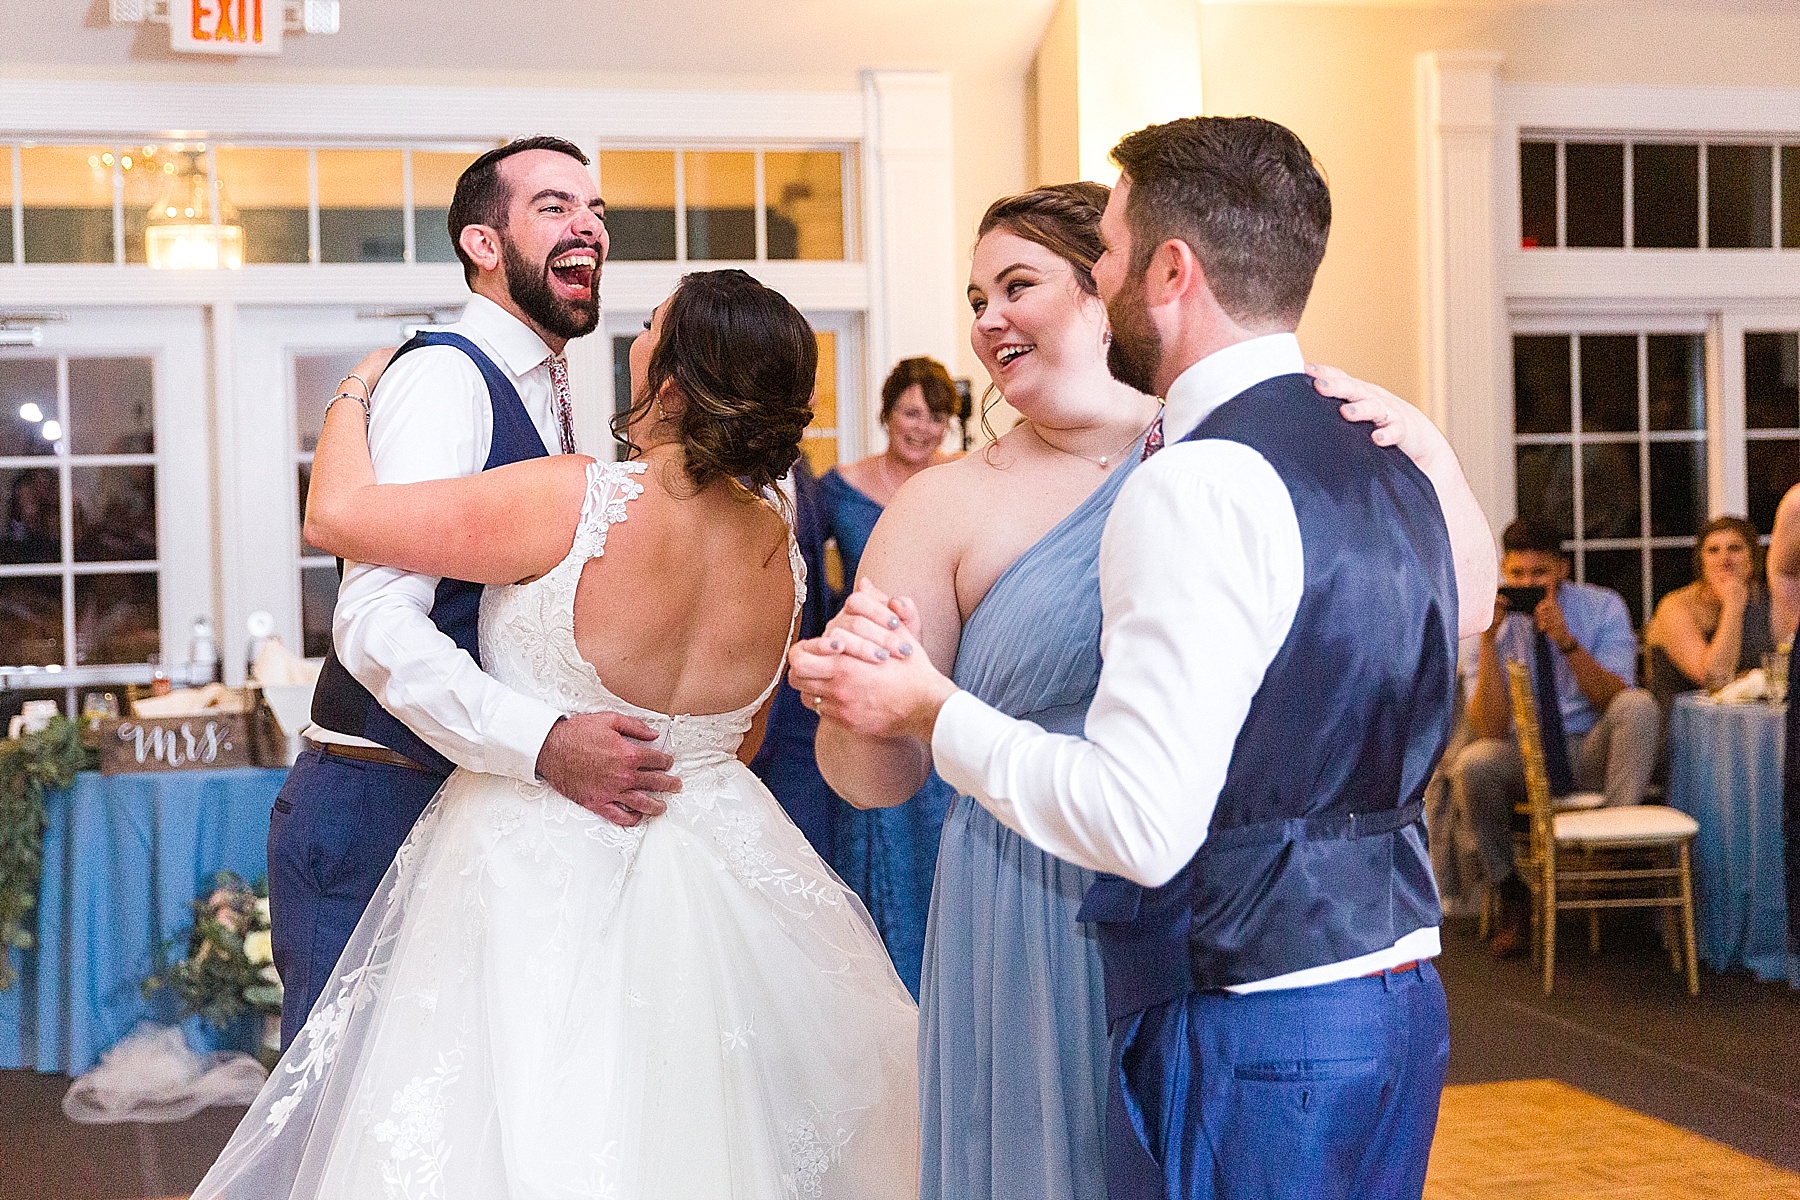 sibling wedding dance with Alexandra Mandato Photography